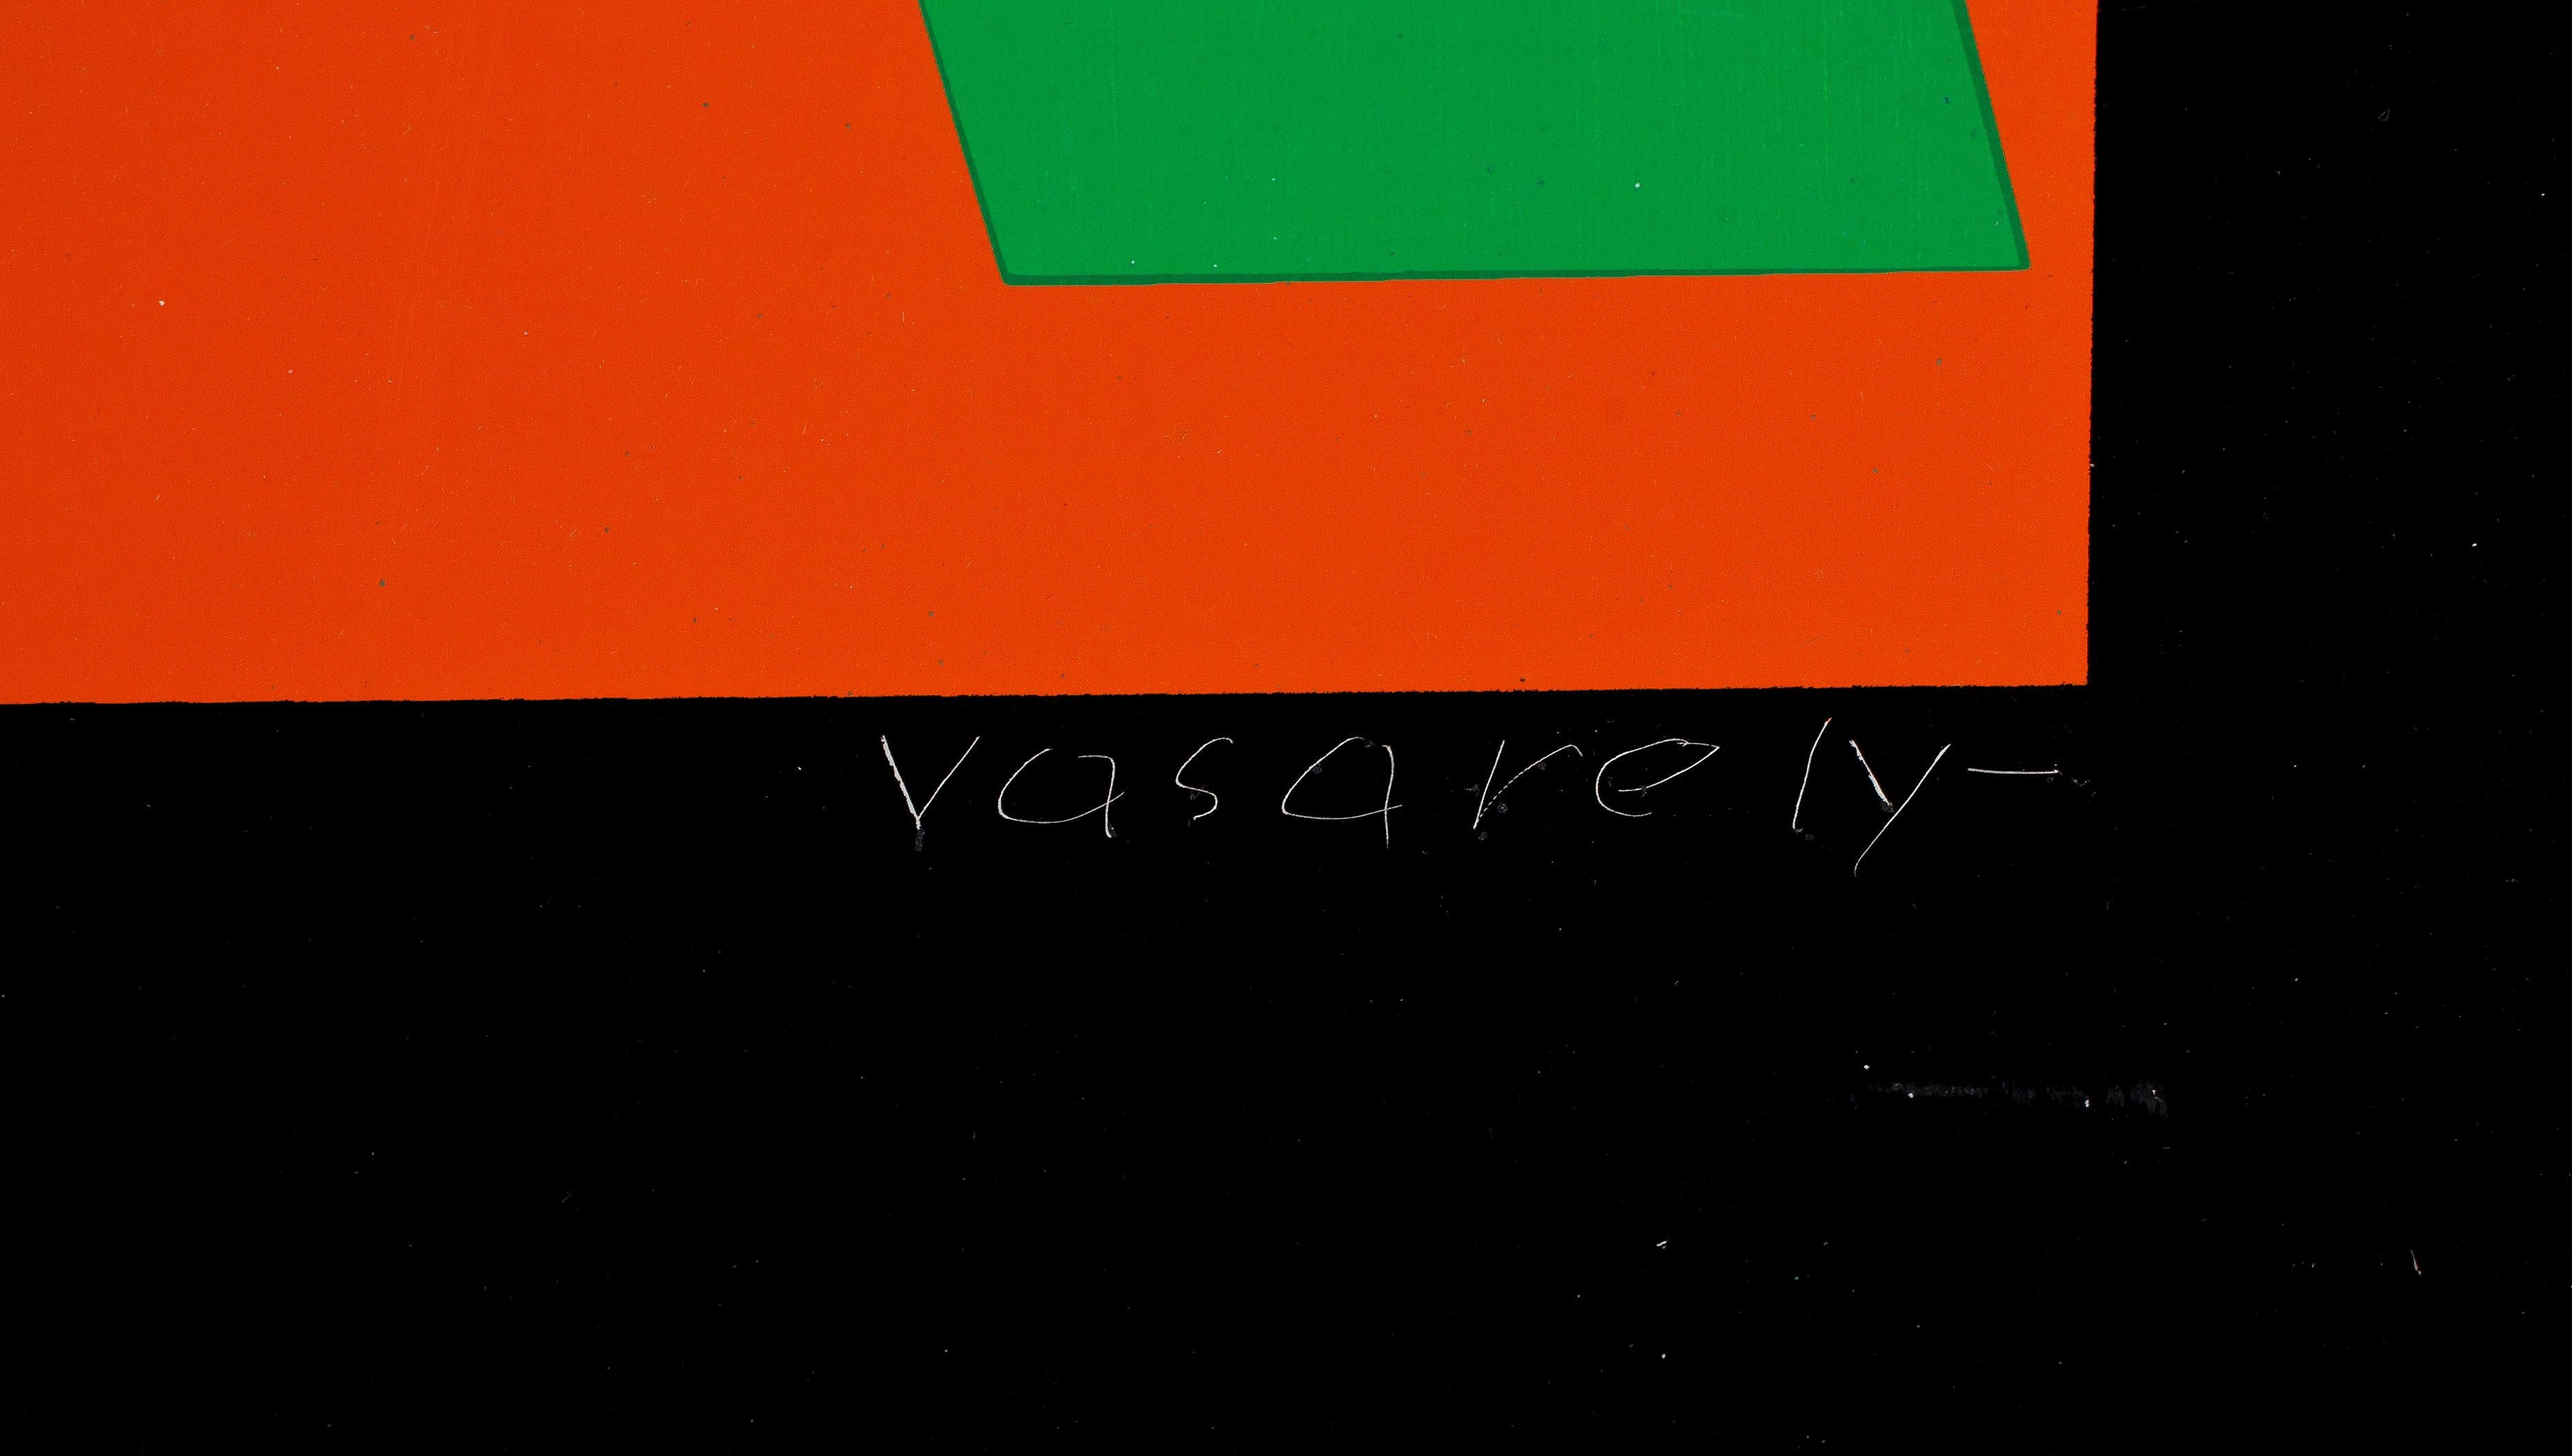 Mehrfaches auf Metall von Victor Vasarely Geometrische Komposition Signiert Frankreich 1970
Geometrische Zusammensetzung auf Metall gravierte Signatur und nummeriert 45/160
Guter Zustand, einige leichte Kratzer
Victor Vasarely, die Strategie des